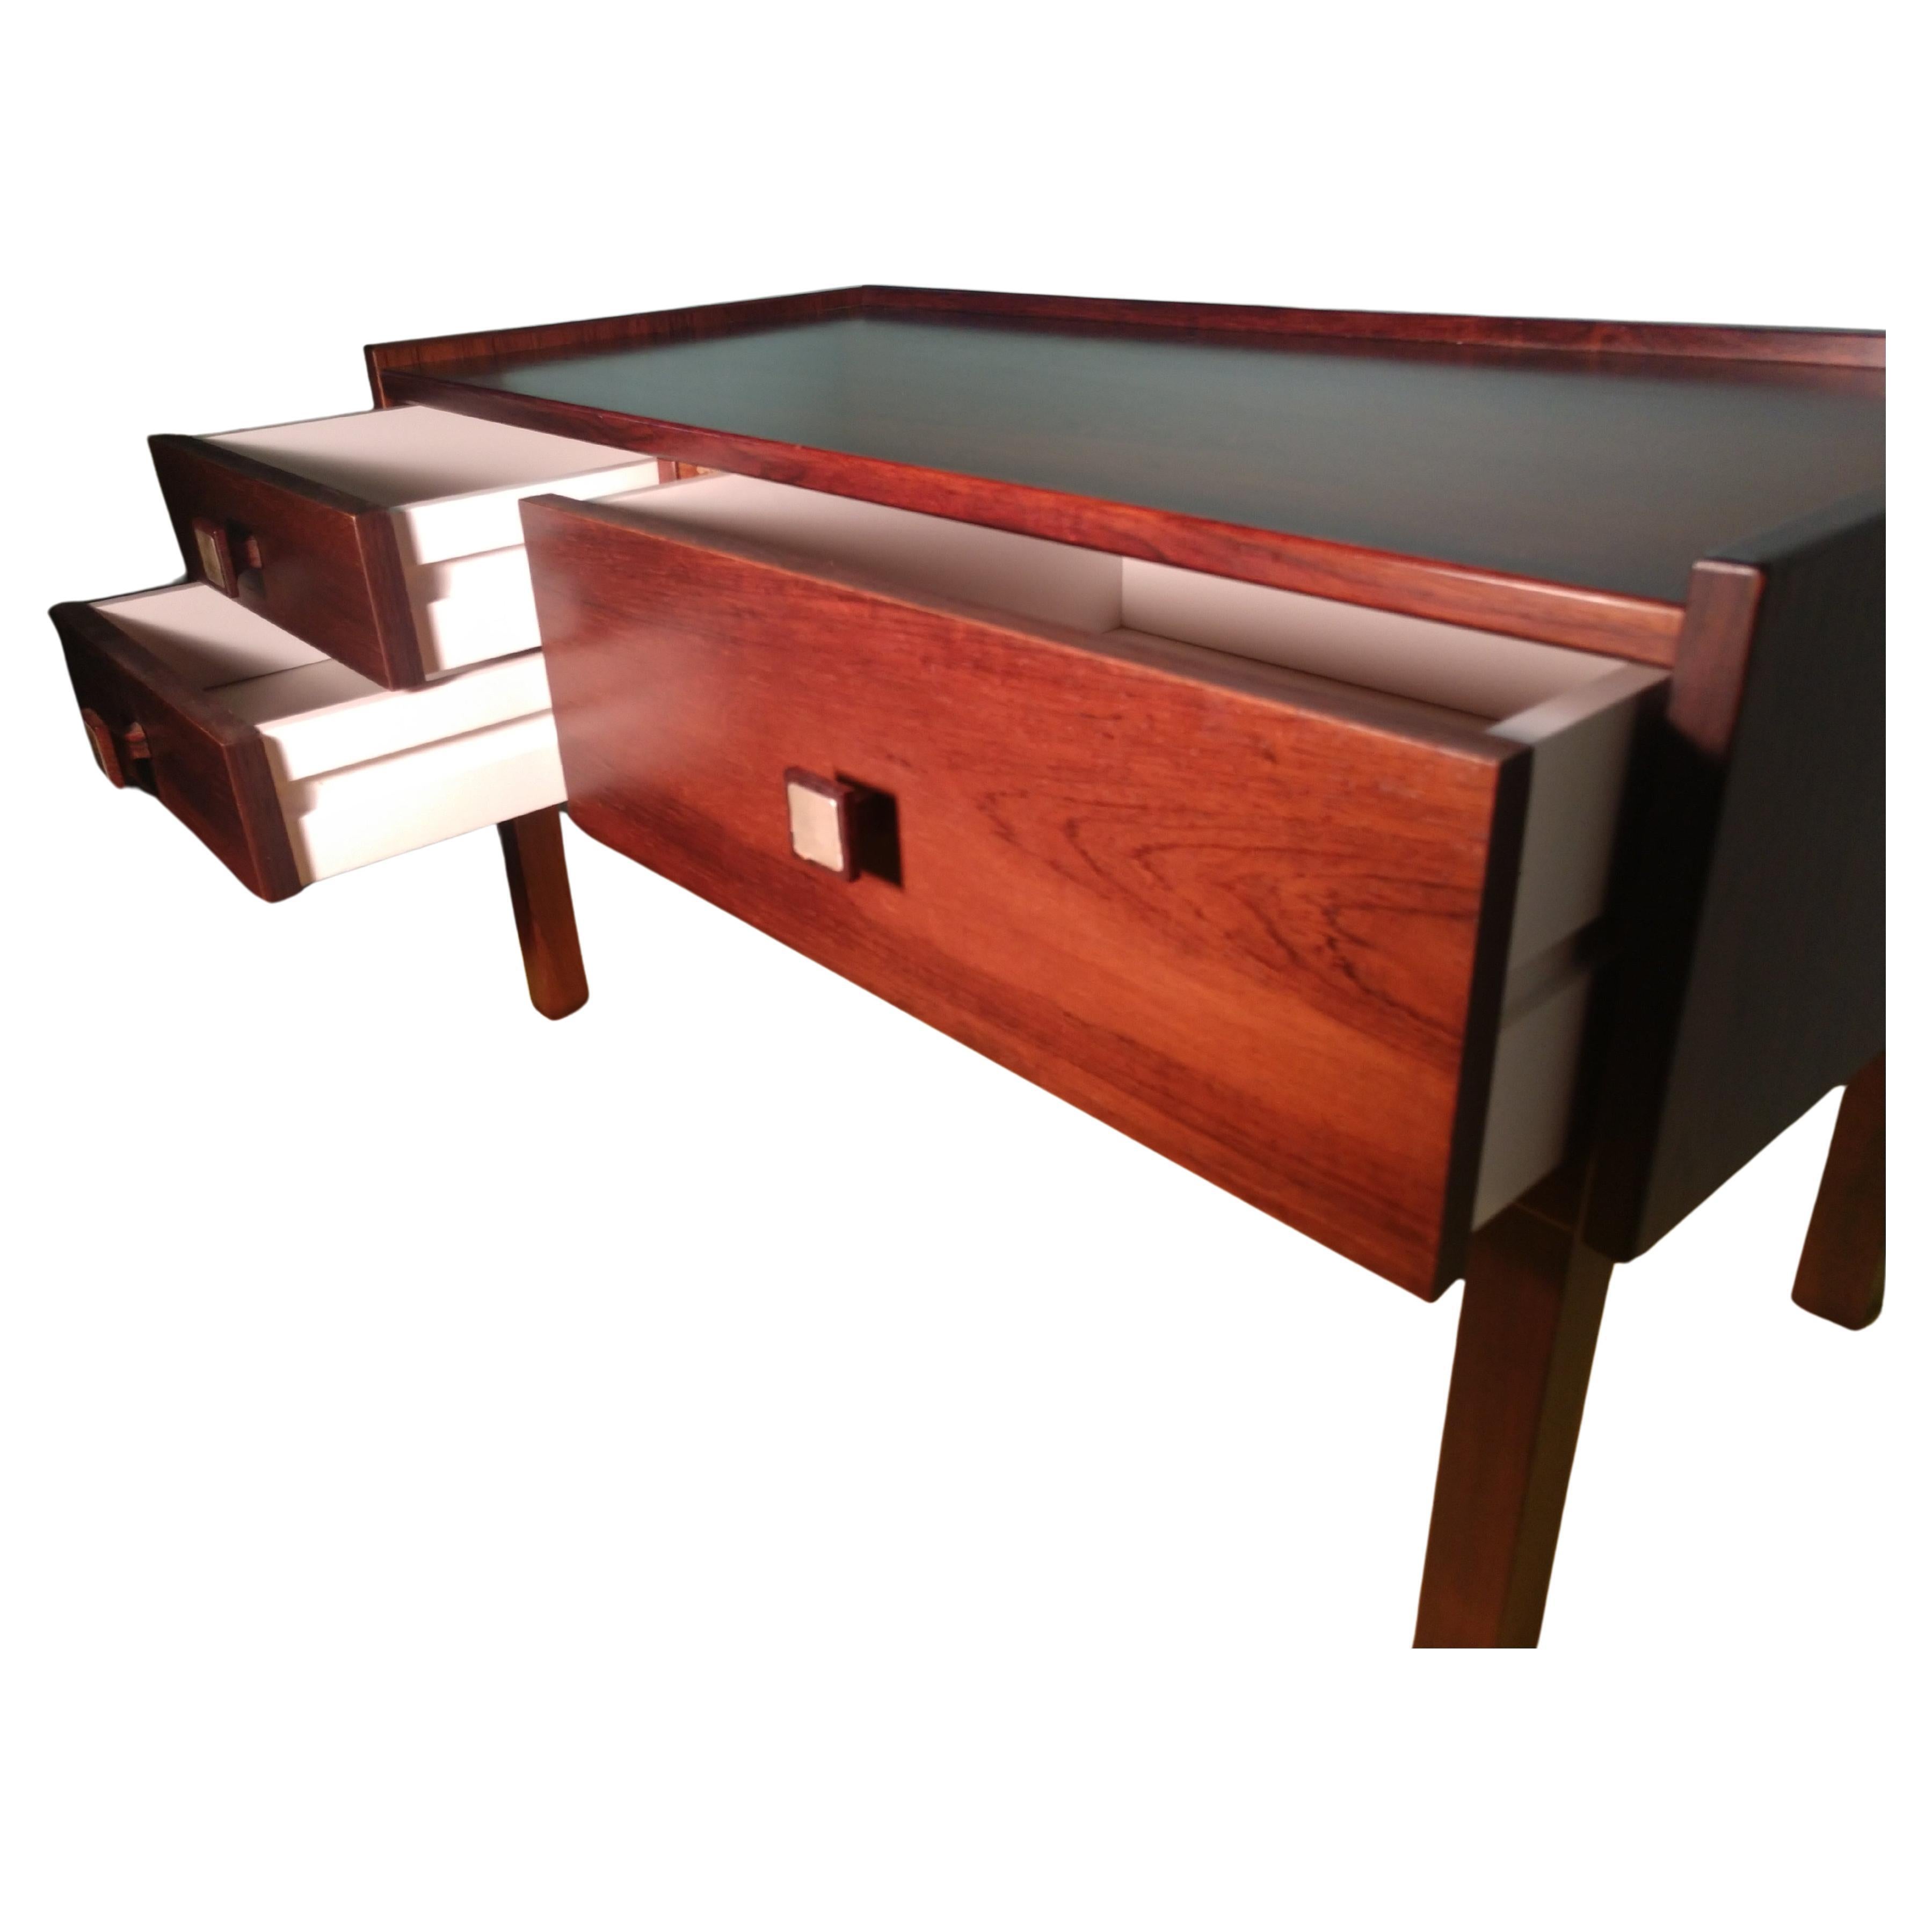 Schlanker, schlichter und eleganter 3-Schubladen-Tisch aus Palisanderholz.
Zwei Schubladen auf der linken Seite und eine größere in voller Größe auf der rechten Seite.
Sehr stabil und dicht, ideal für einen engen Raum.